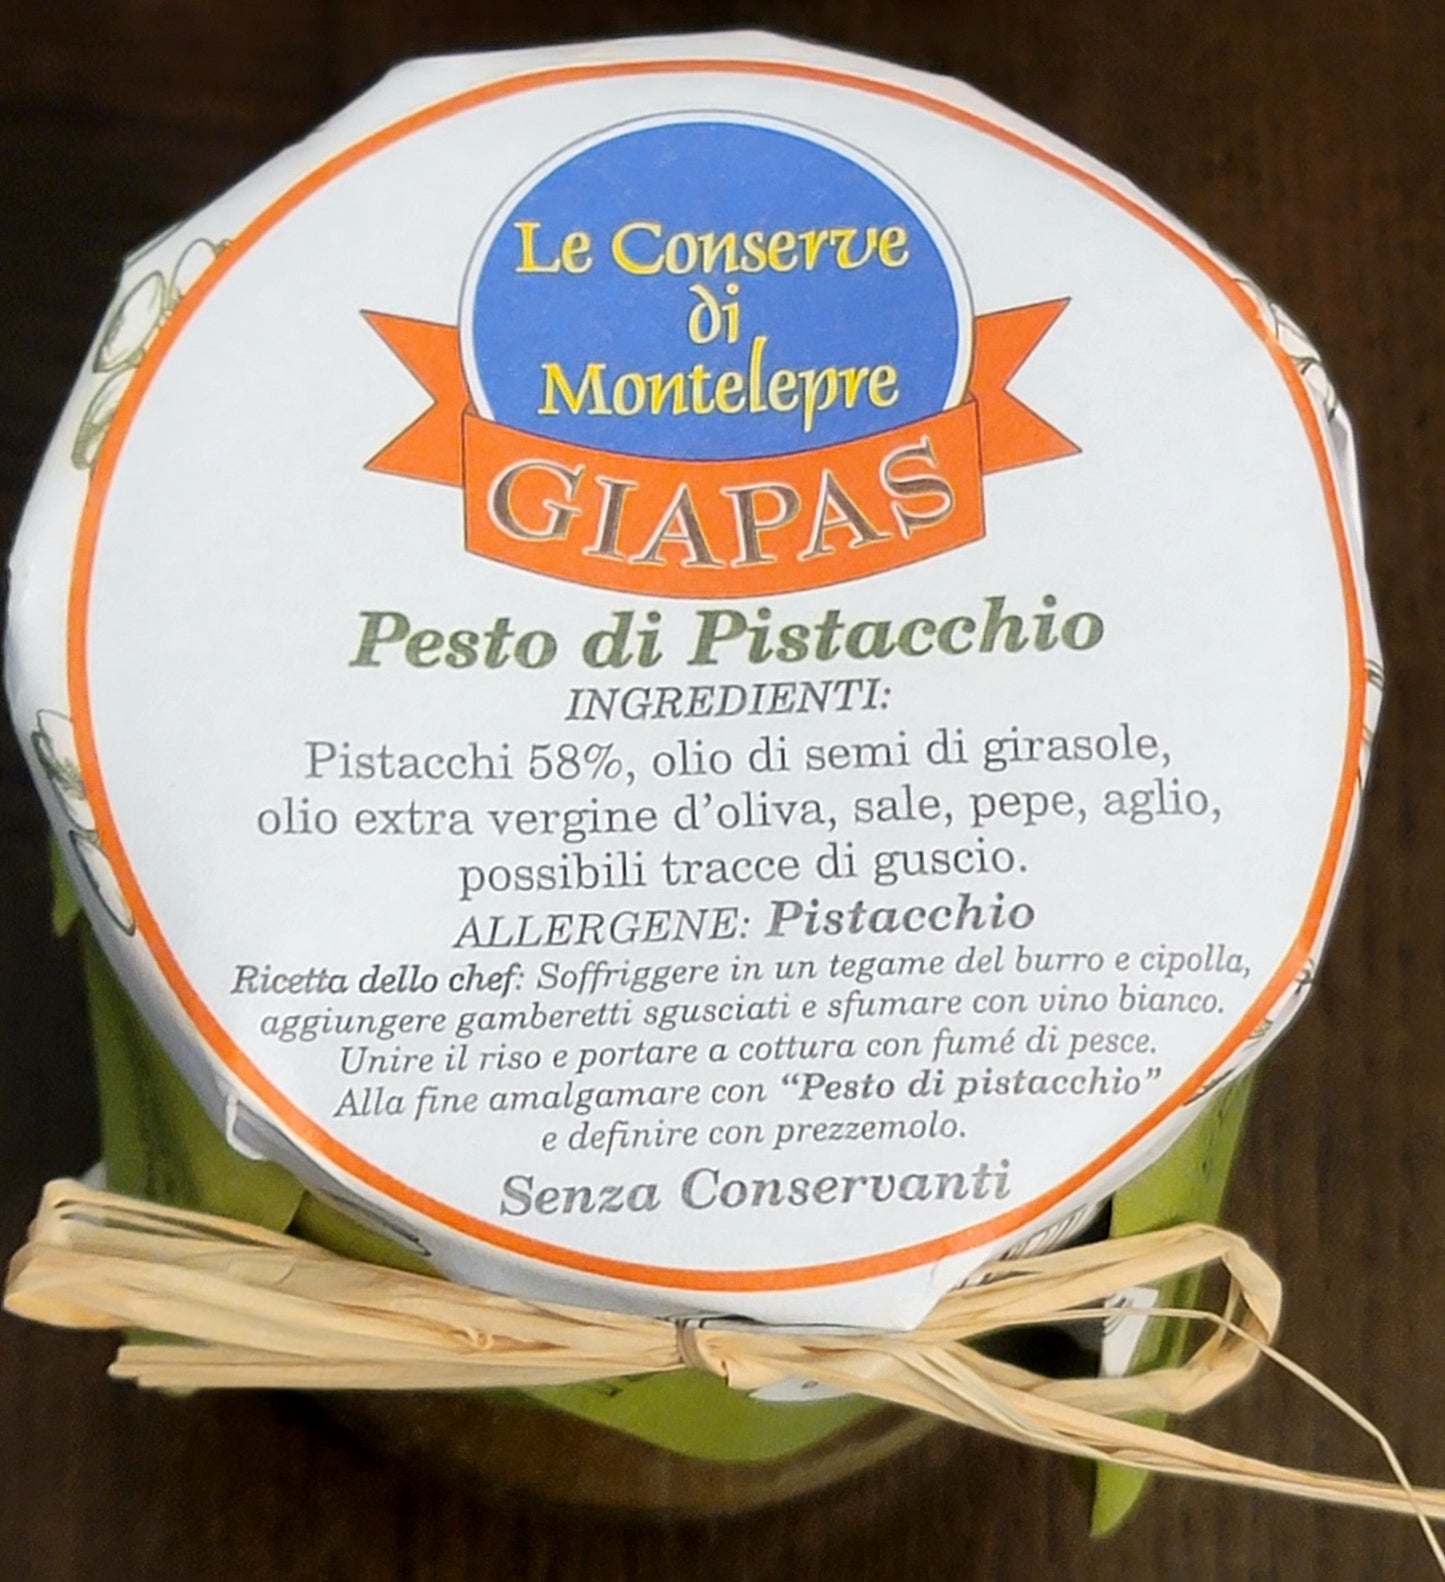 Giapas Le Conserve Di Montelepre Sicilian Pistacchio Pesto